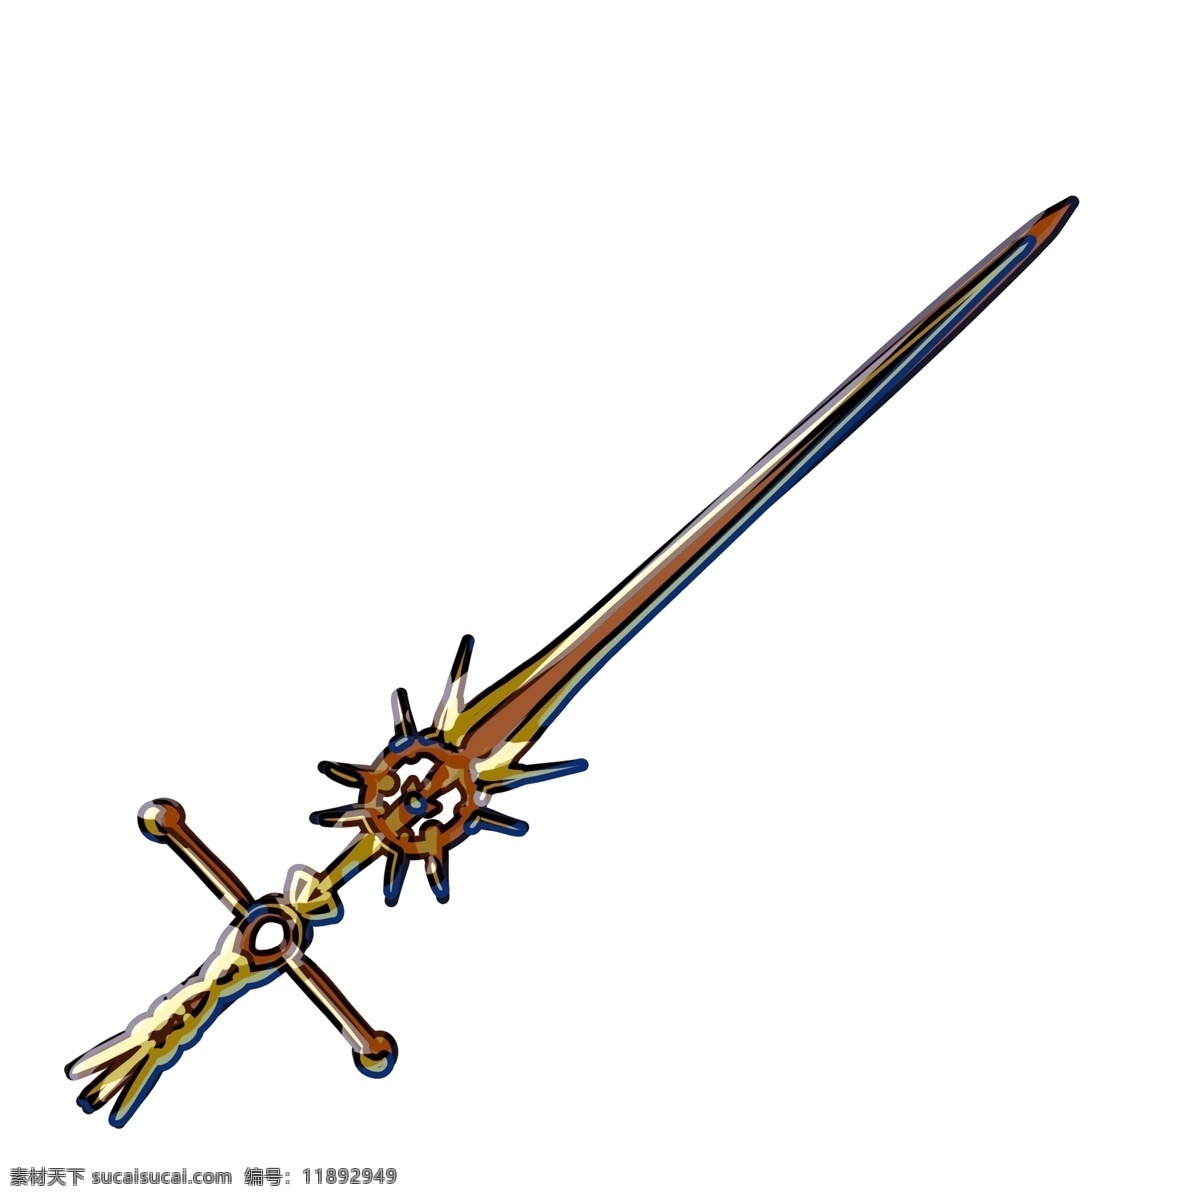 黄色 宝剑 装饰 插画 黄色的宝剑 漂亮的宝剑 创意宝剑 立体宝剑 卡通宝剑 宝剑装饰 宝剑插画